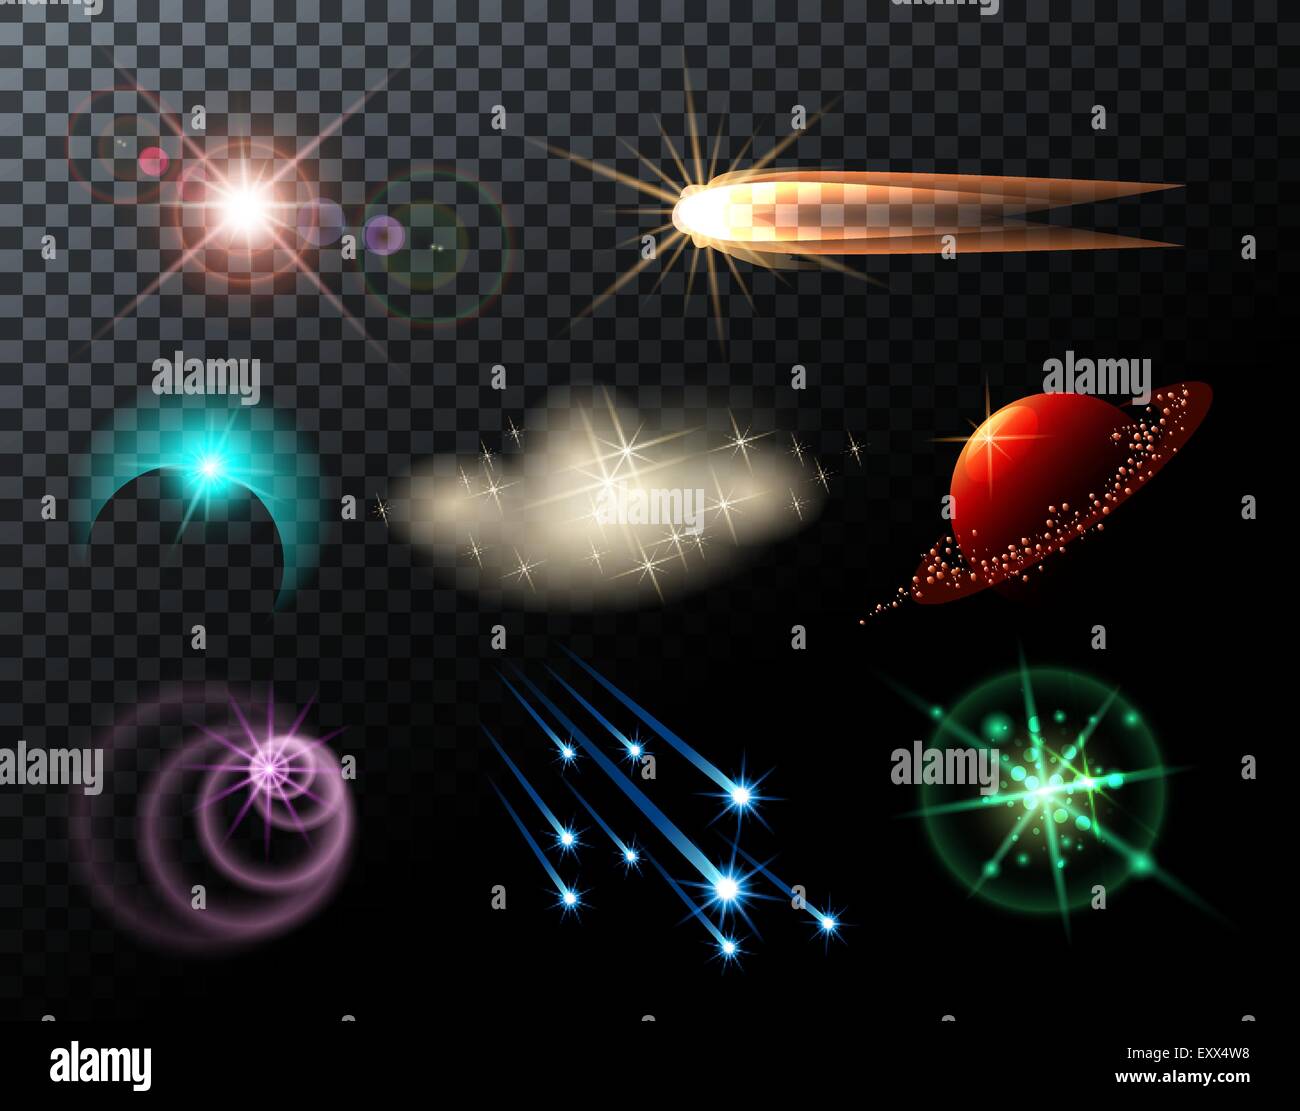 Les feux lumineux, étoiles, comètes et scintille sur fond transparent. Illustration de Vecteur